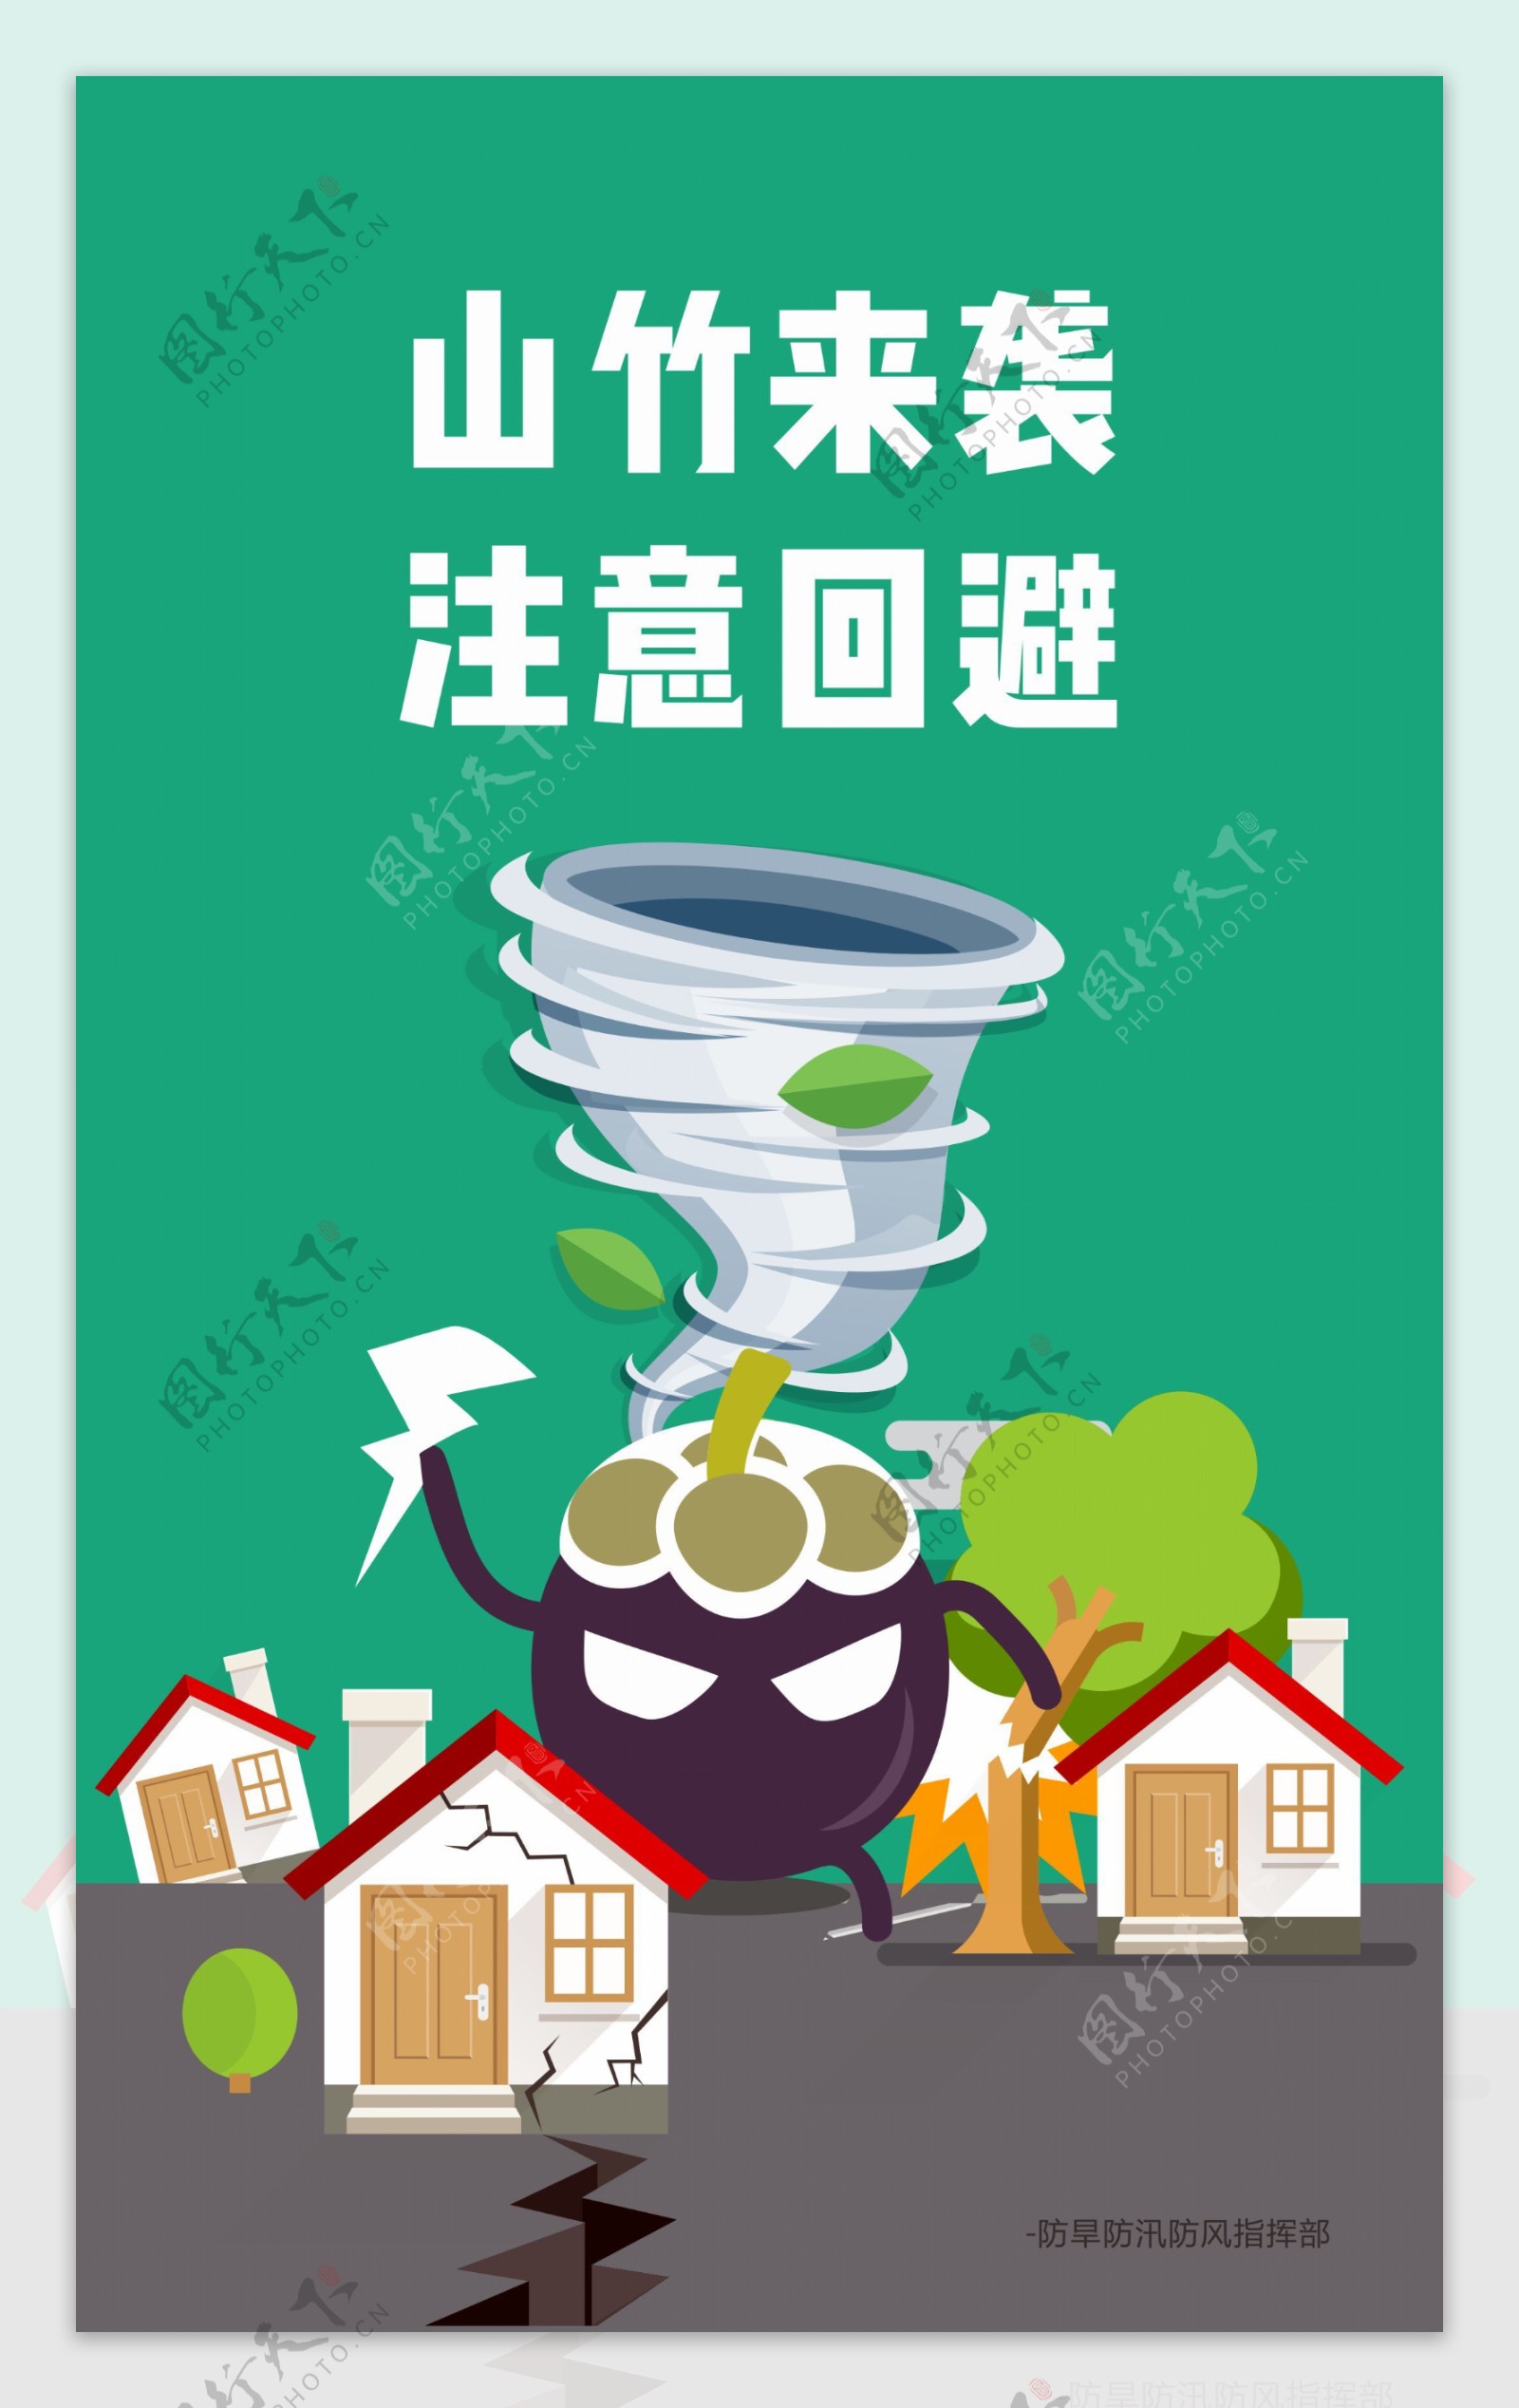 山竹台风预警公益海报